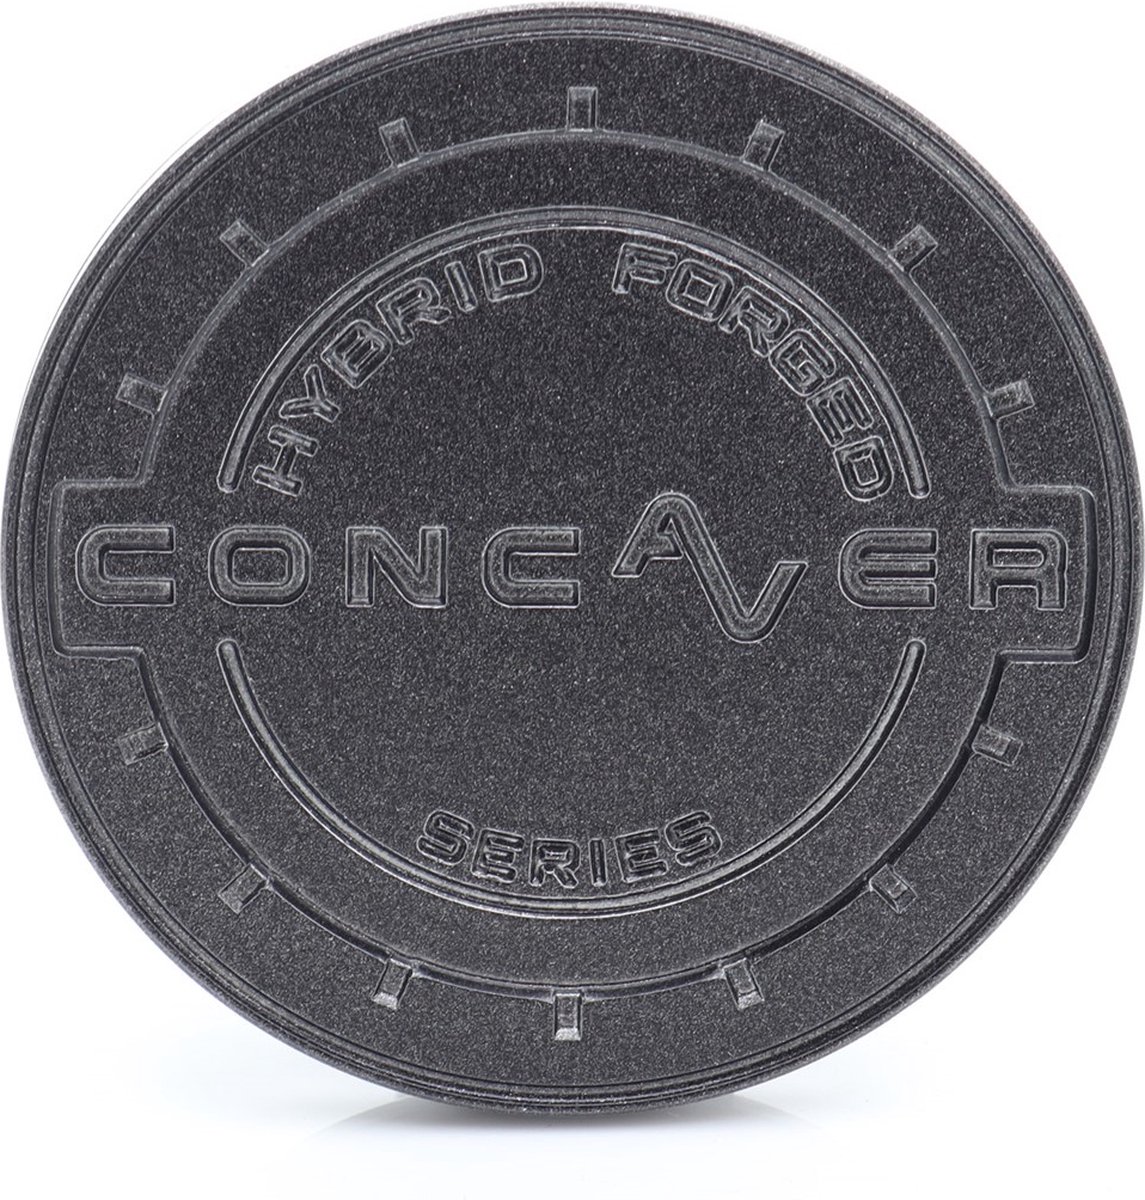 Center cap Concaver wheels CVR carbon graphite